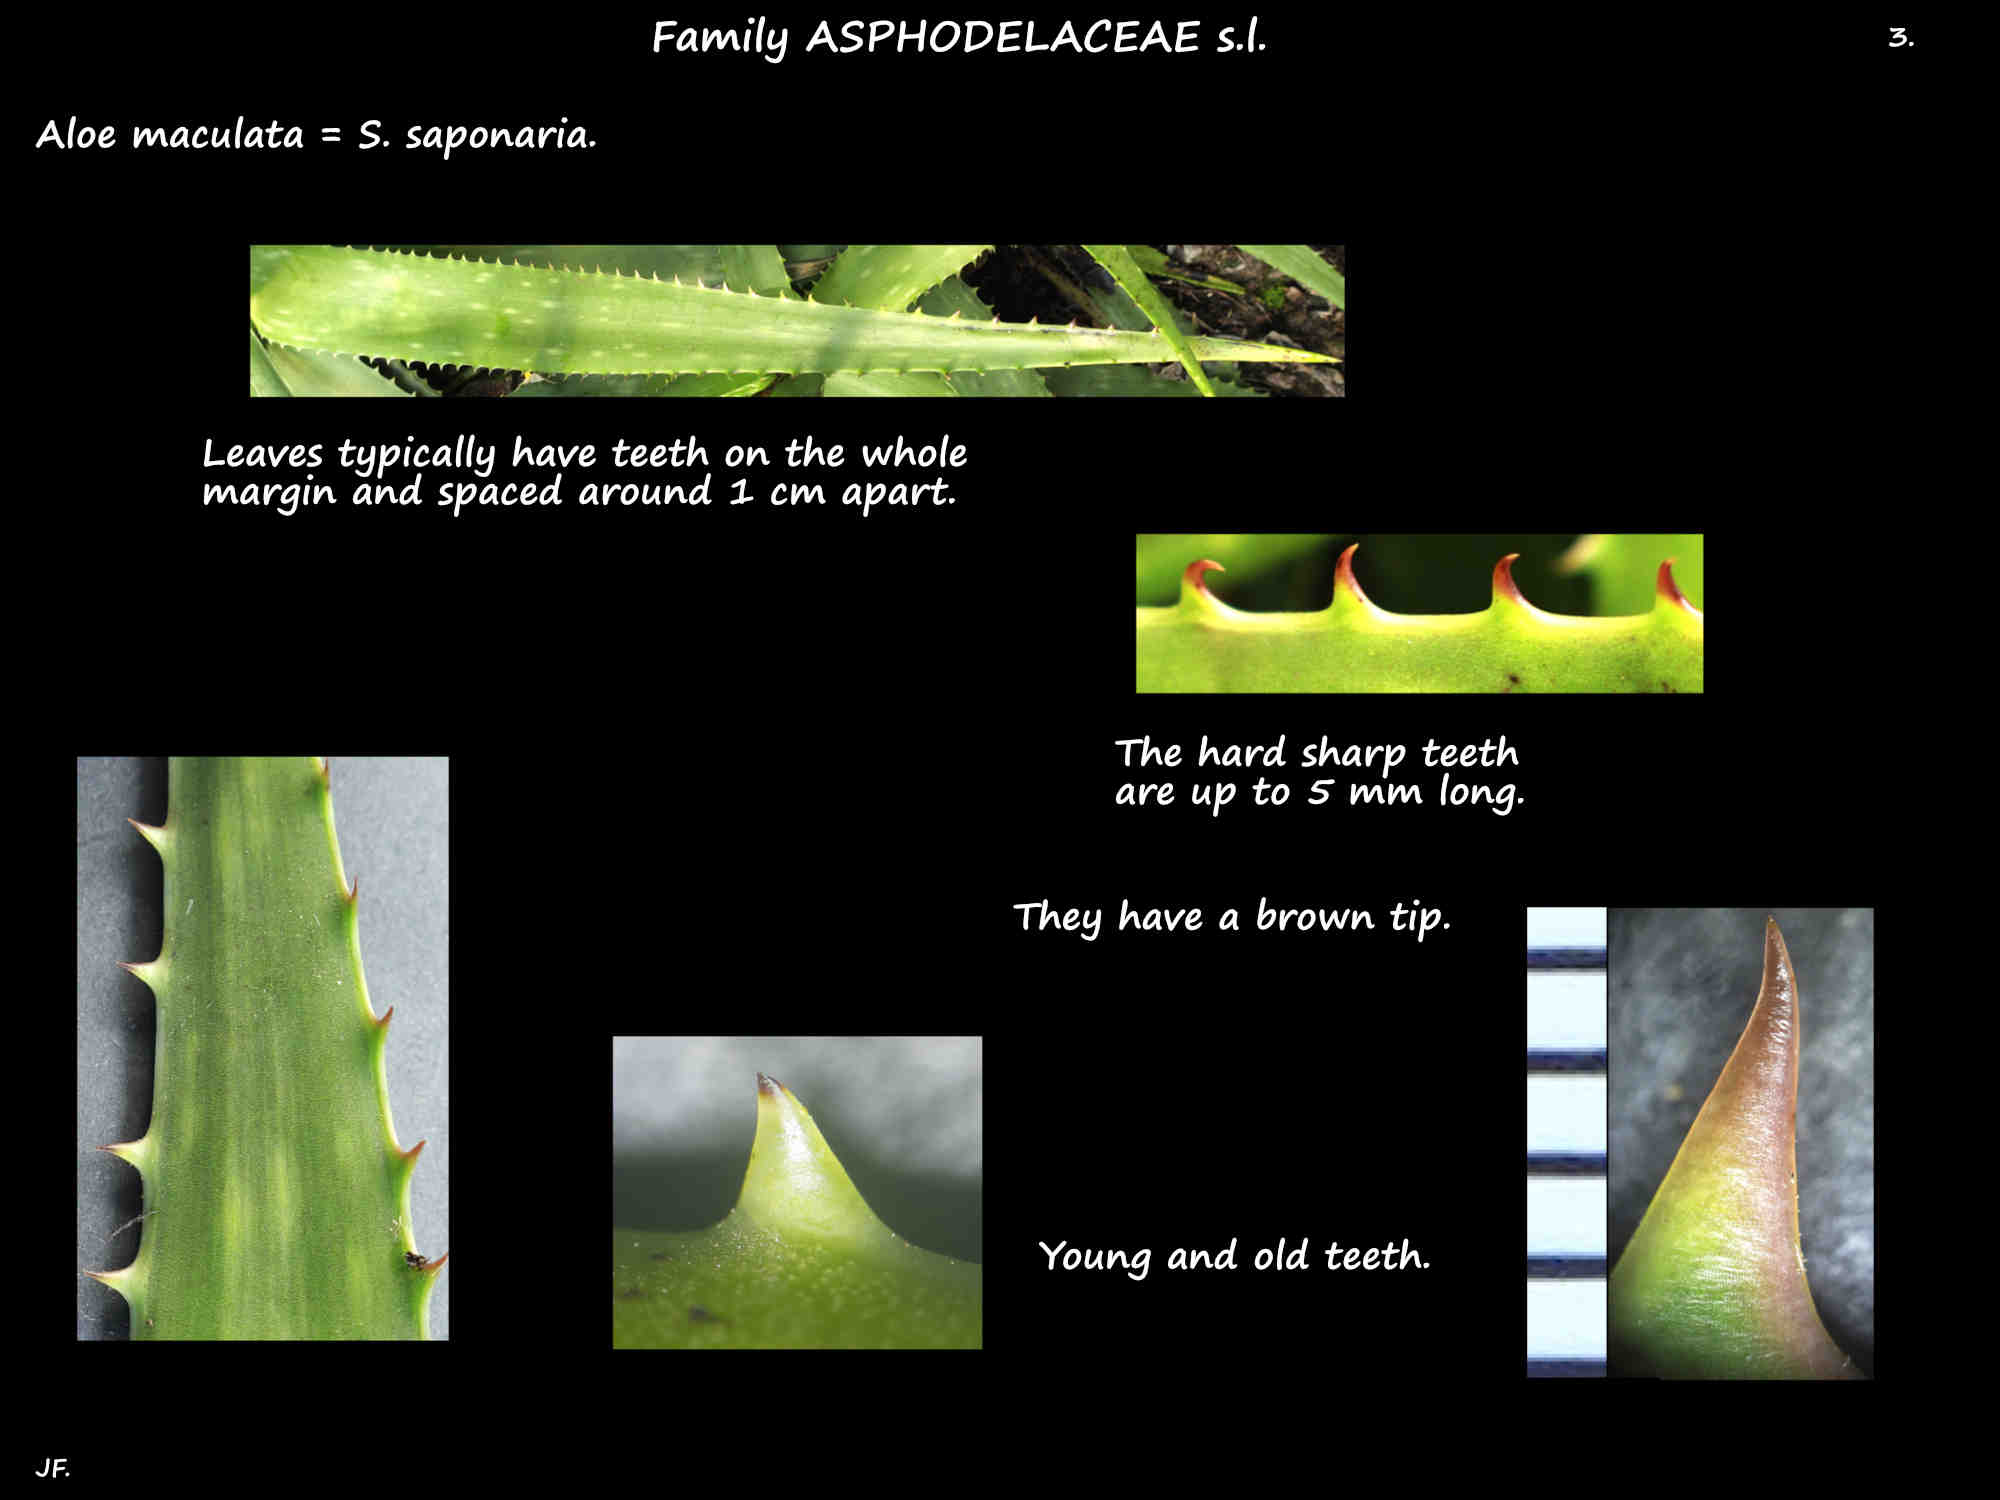 3 Teeth on Aloe saponaria leaves